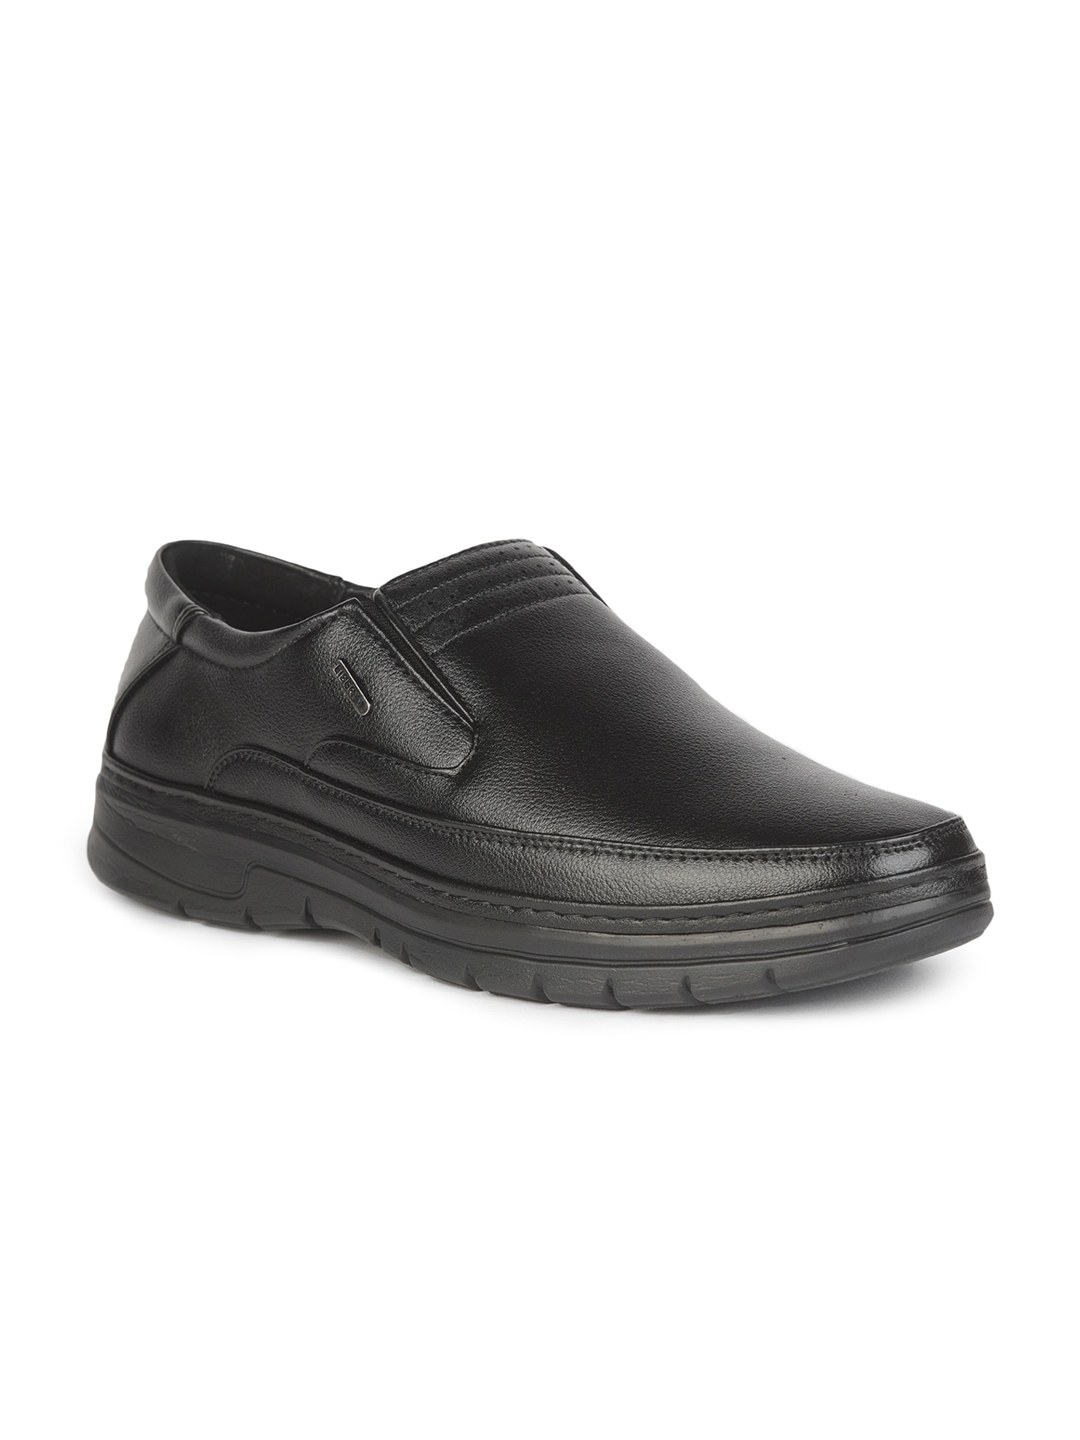 Buy Liberty Men Black Solid Slip On Formal Shoes - Formal Shoes for Men ...